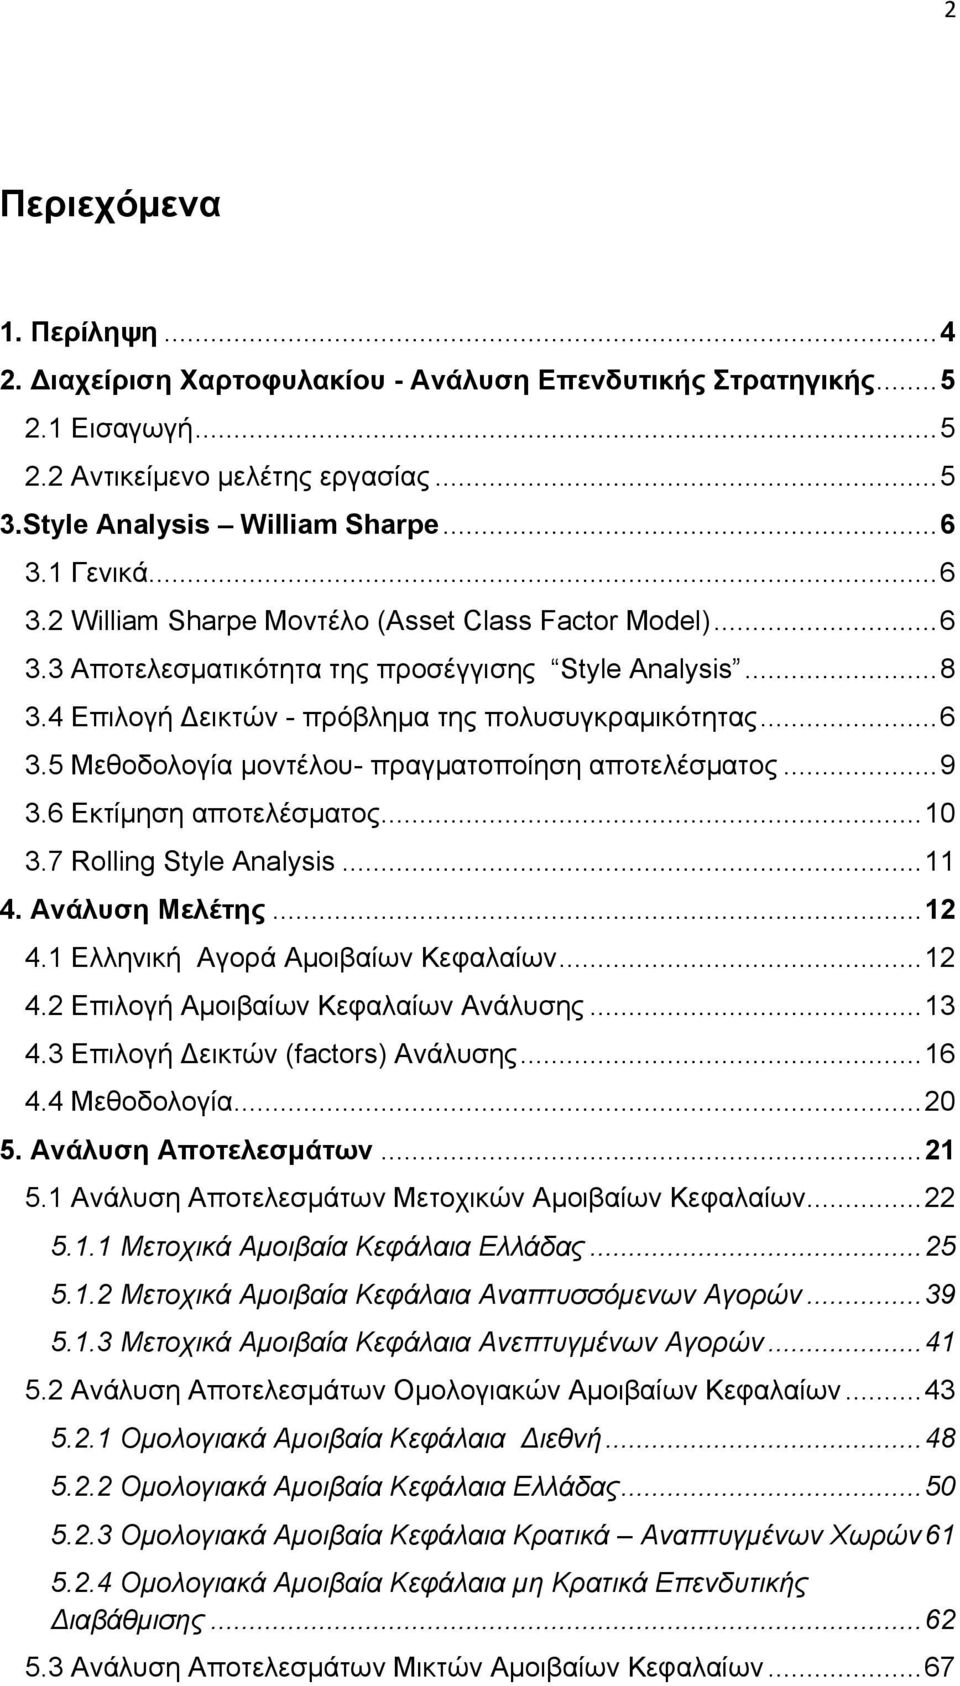 .. 9 3.6 Εκτίμηση αποτελέσματος... 10 3.7 Rolling Style Analysis... 11 4. Ανάλυση Μελέτης... 12 4.1 Ελληνική Αγορά Αμοιβαίων Κεφαλαίων... 12 4.2 Επιλογή Αμοιβαίων Κεφαλαίων Ανάλυσης... 13 4.